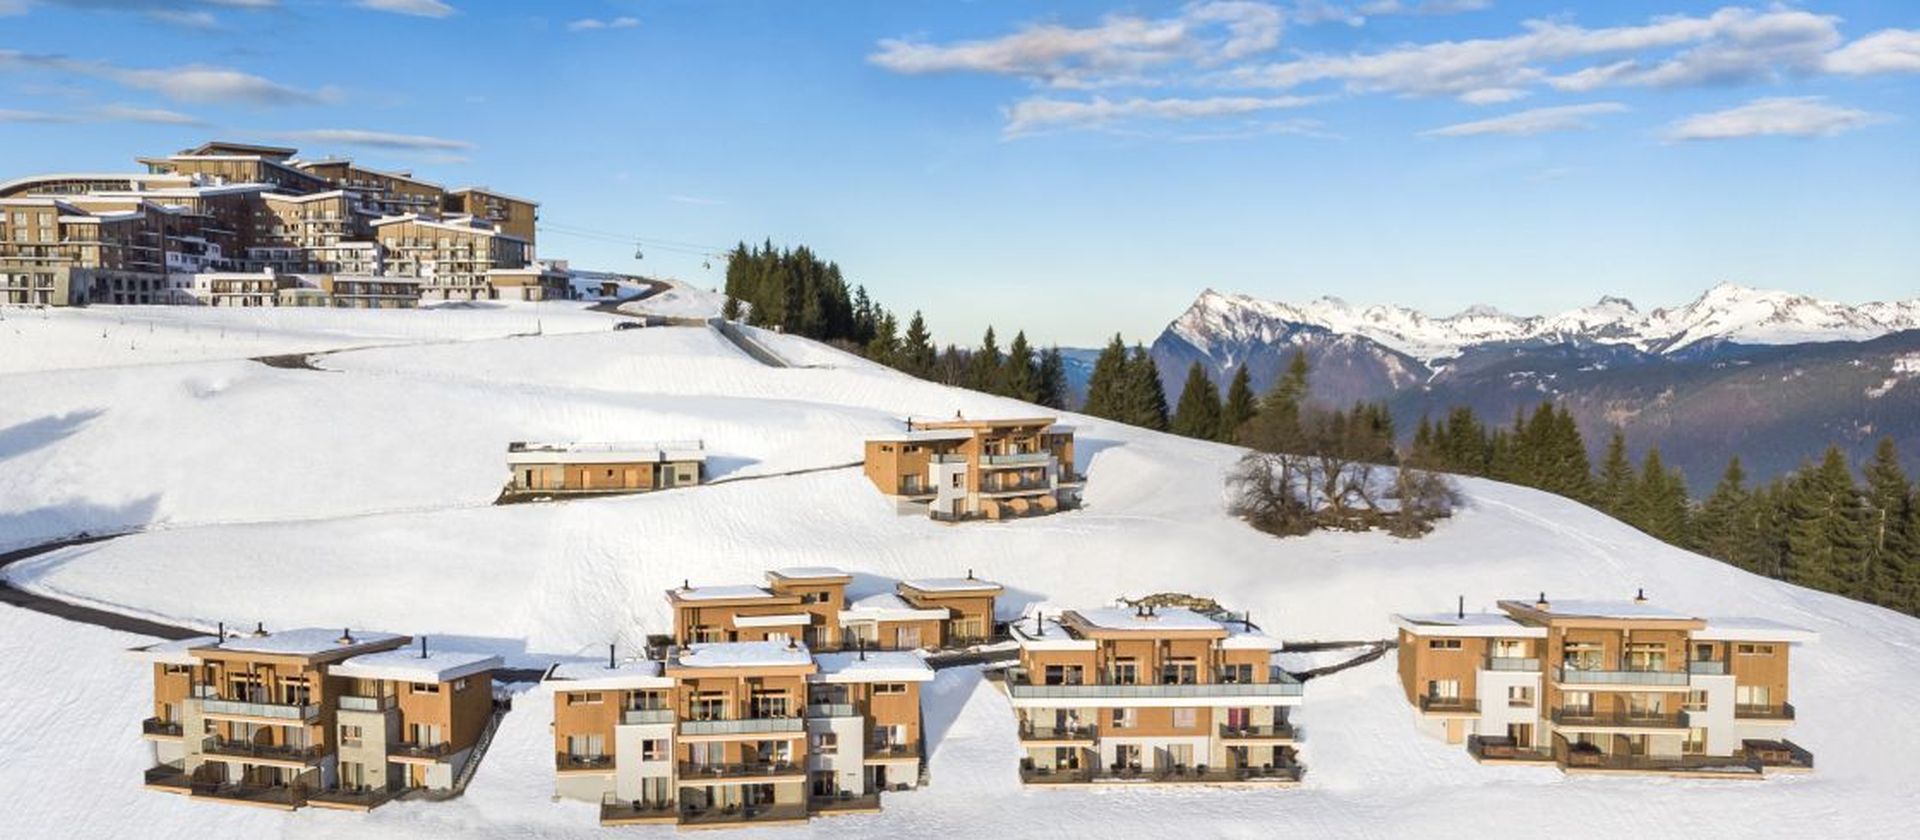 Ski in France with Club Med 's ski resorts in France